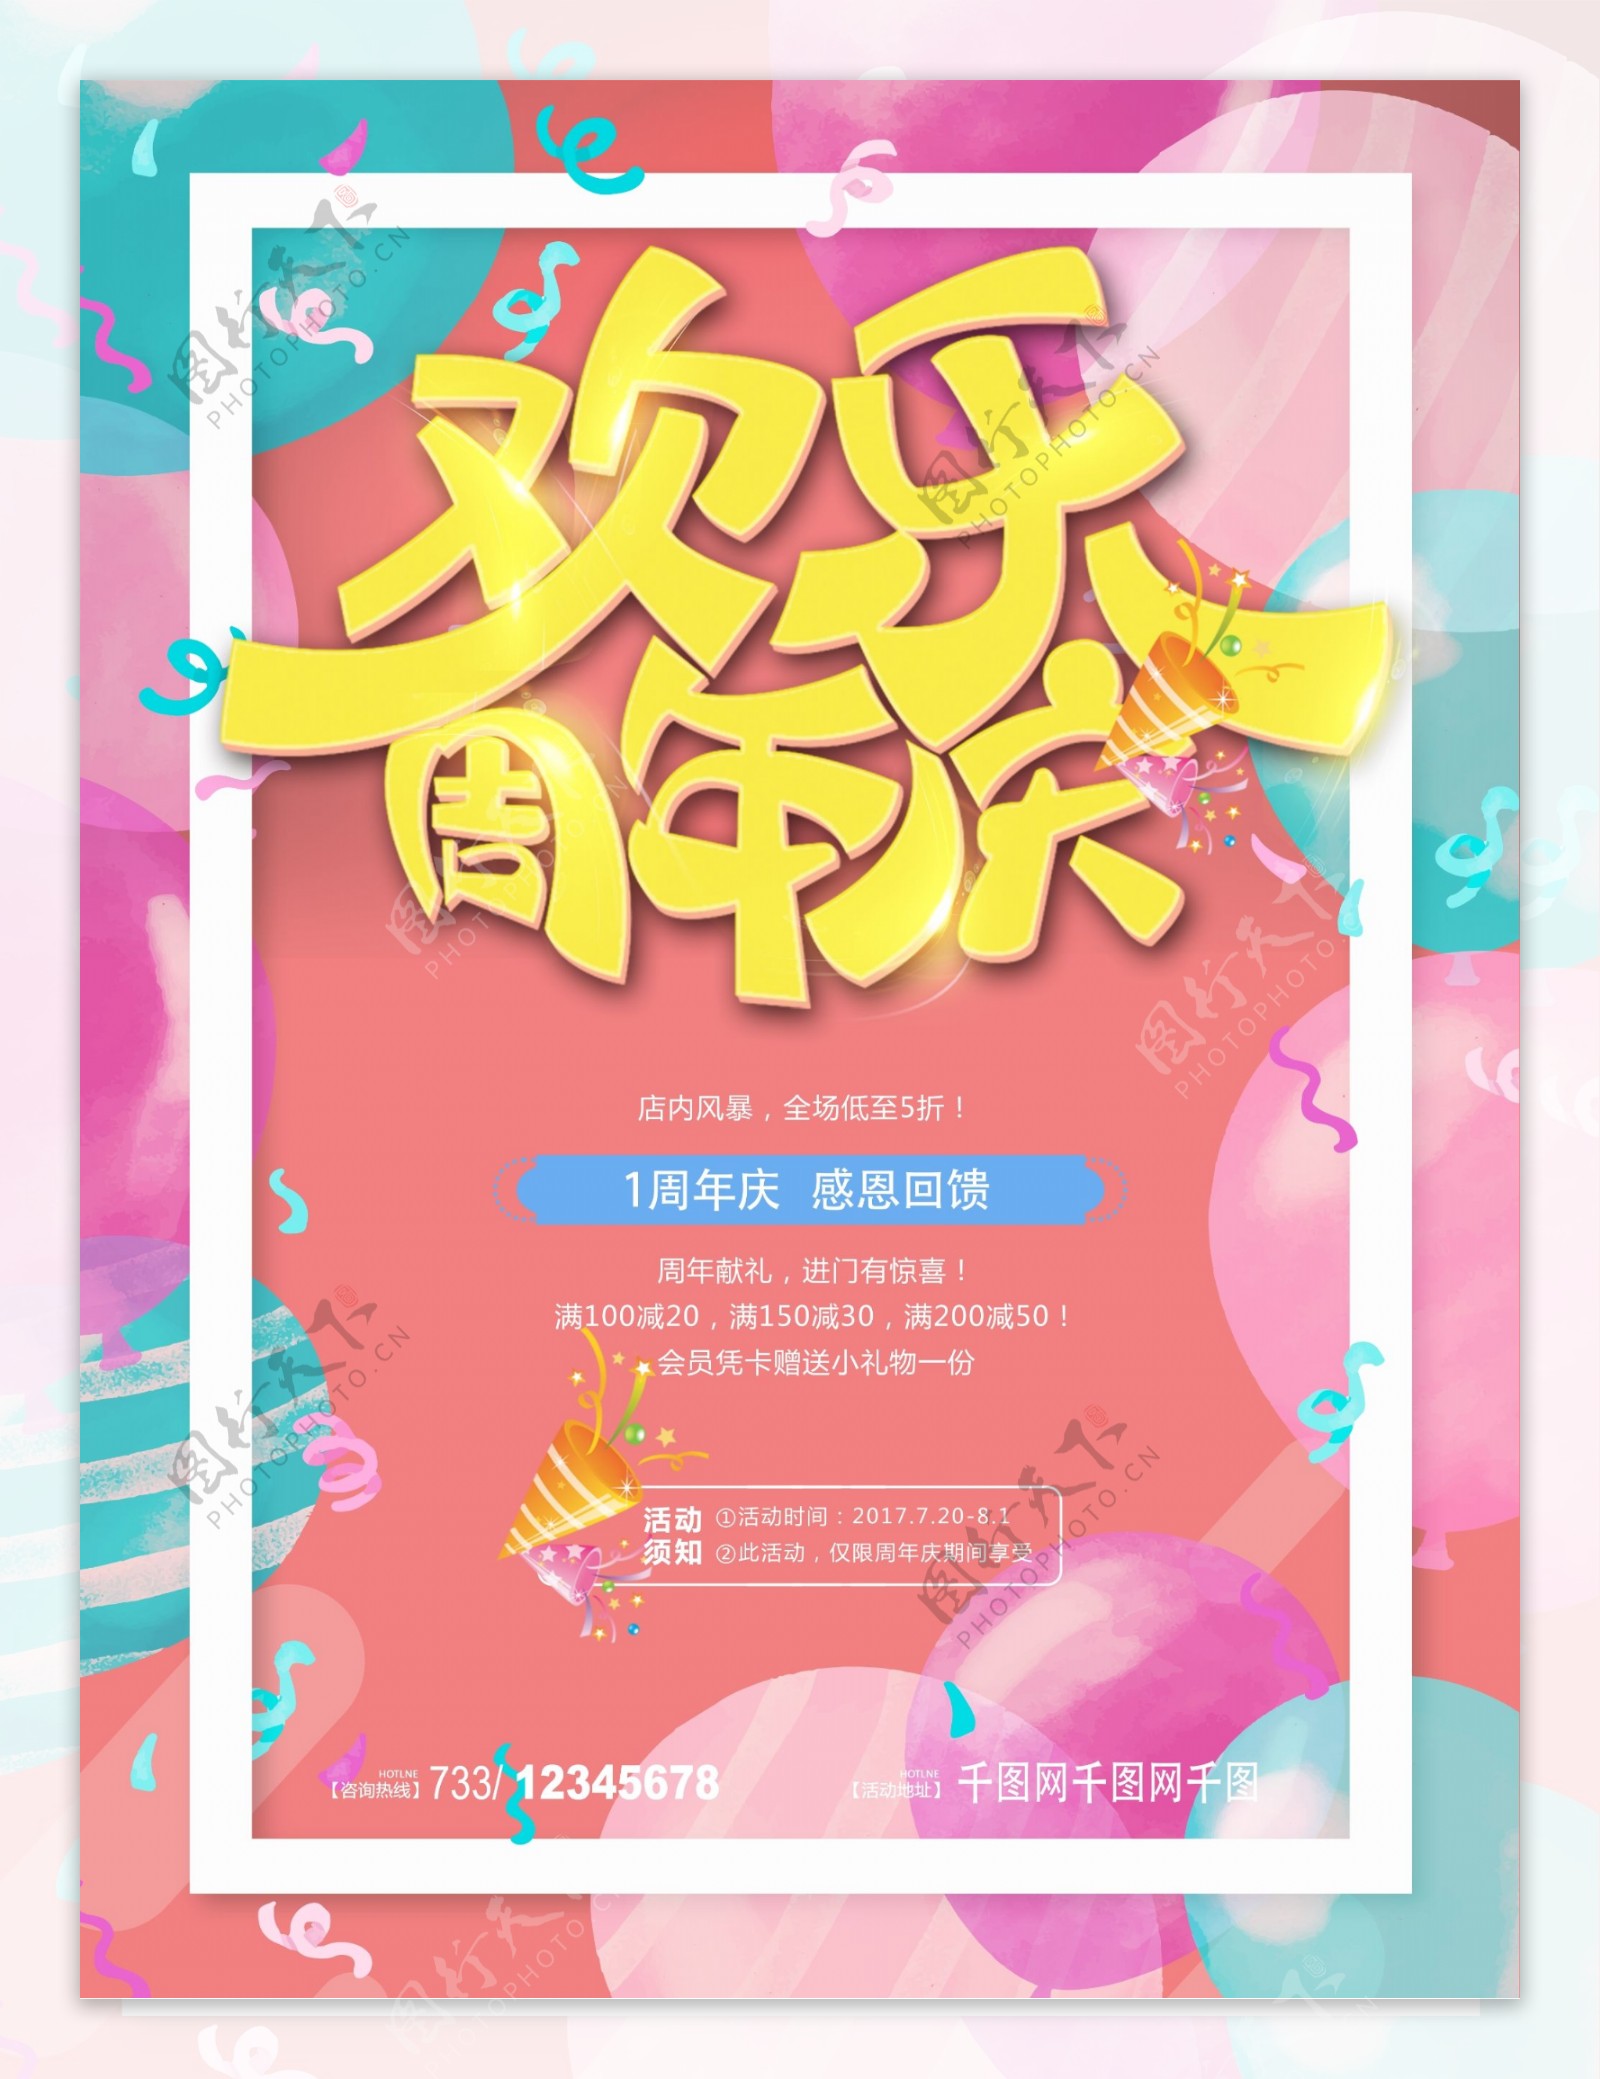 清新欢乐庆祝周年庆典促销海报